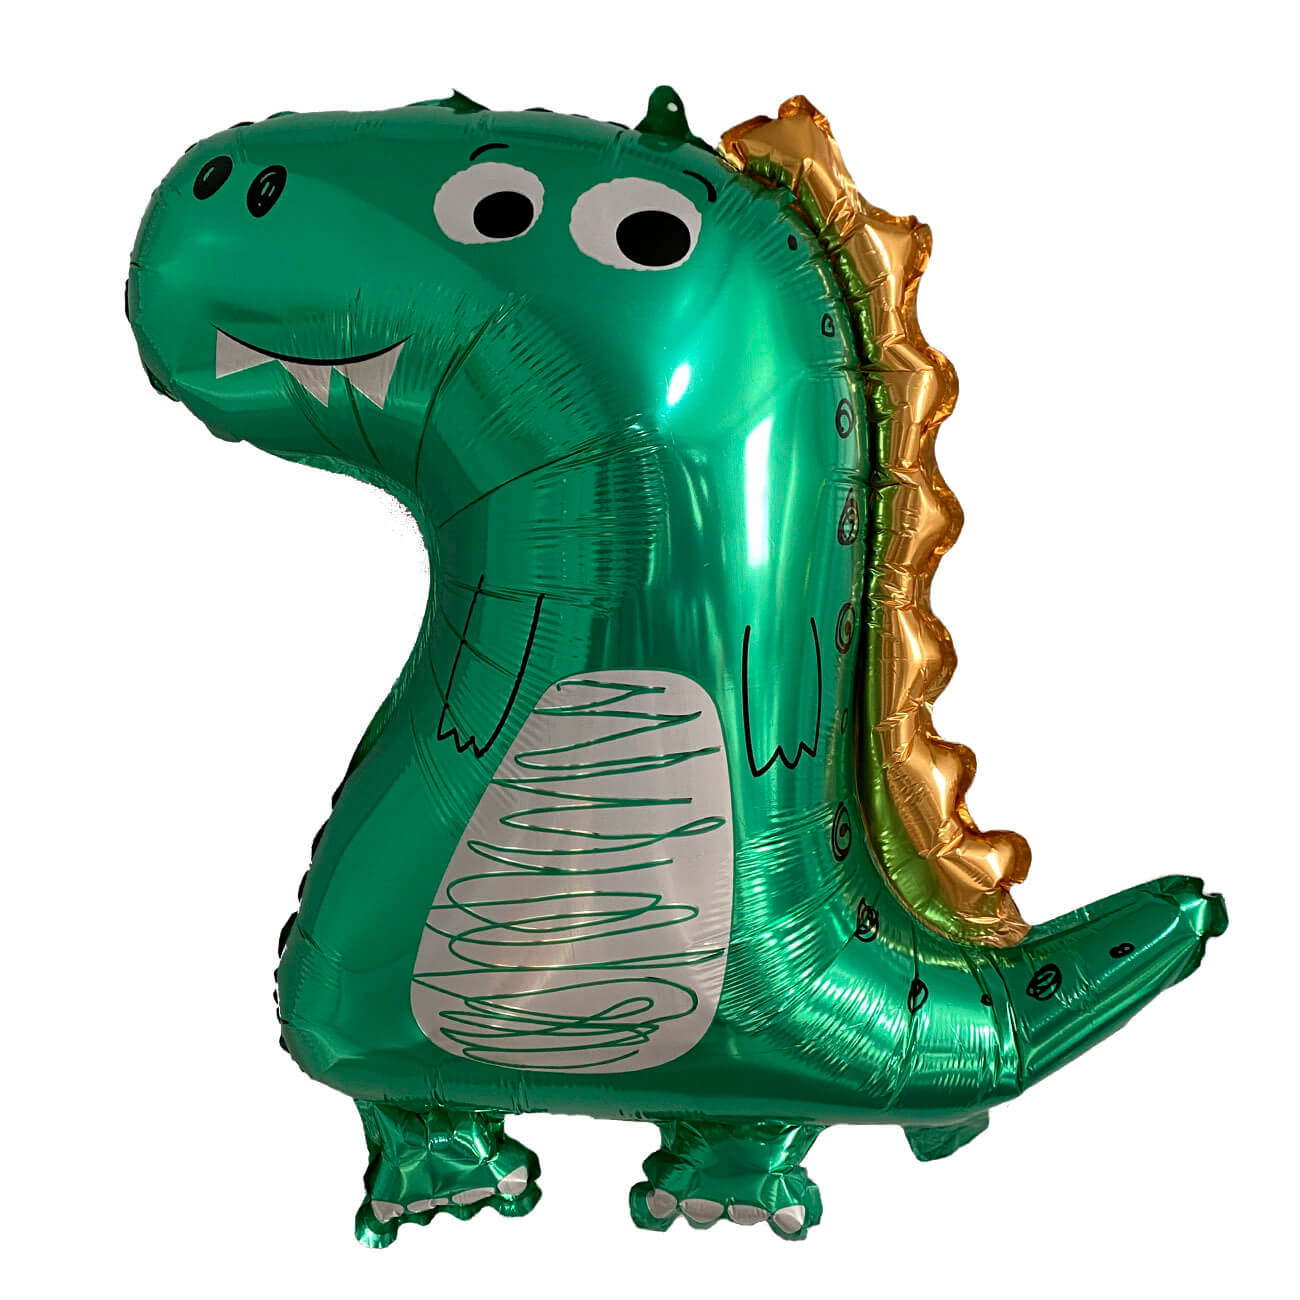 Шар воздушный, 70х59 см, фольга, зеленый, Динозавр, Dino наклейка на воздушный шар